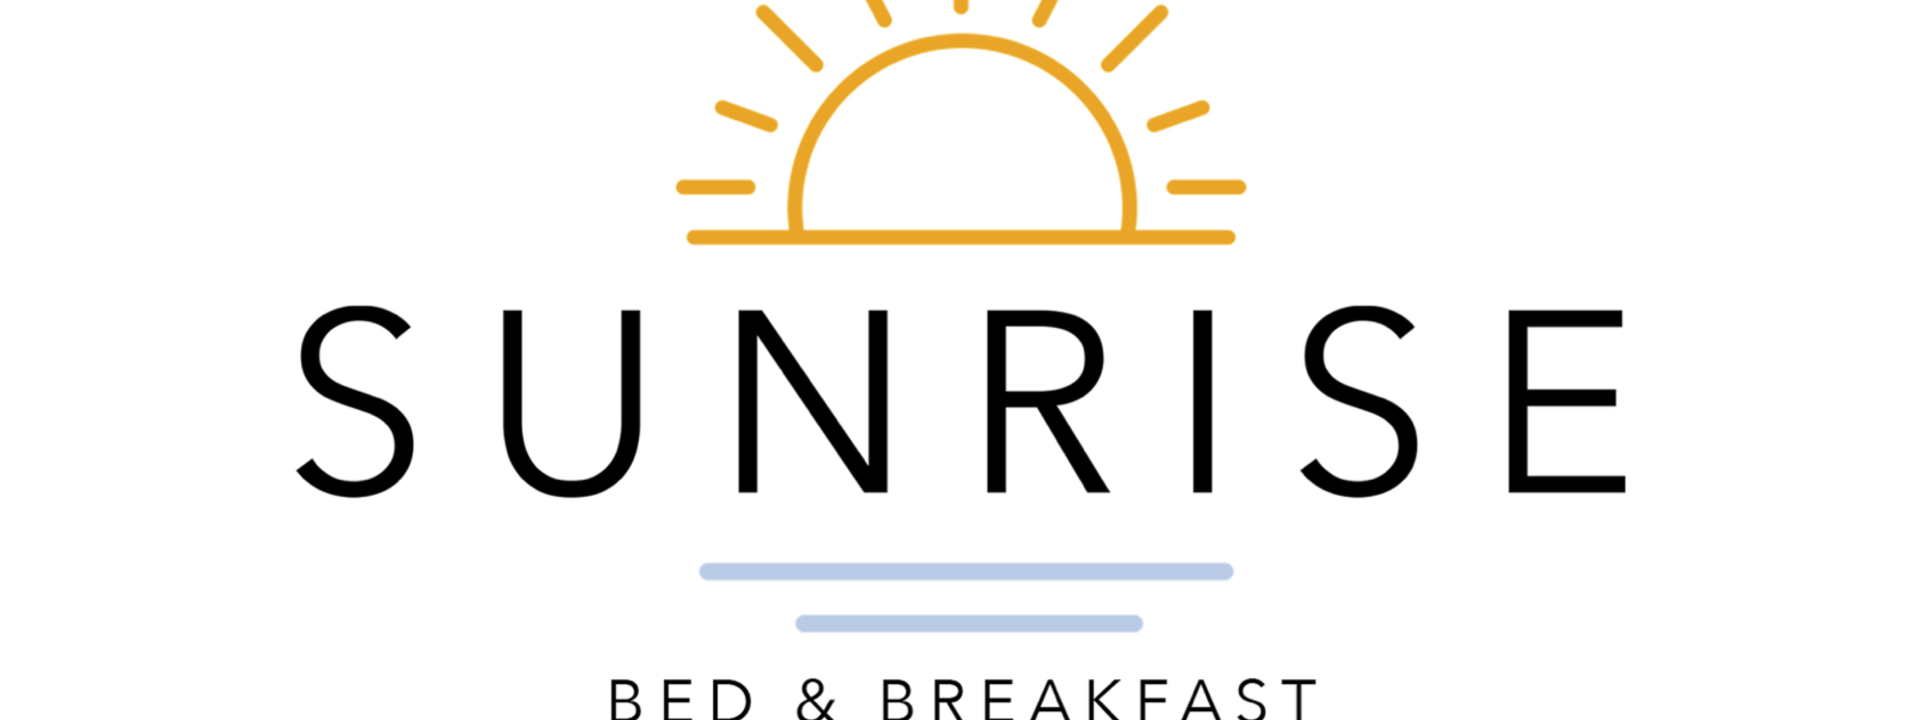 logo-sunrise-bnb_0.png